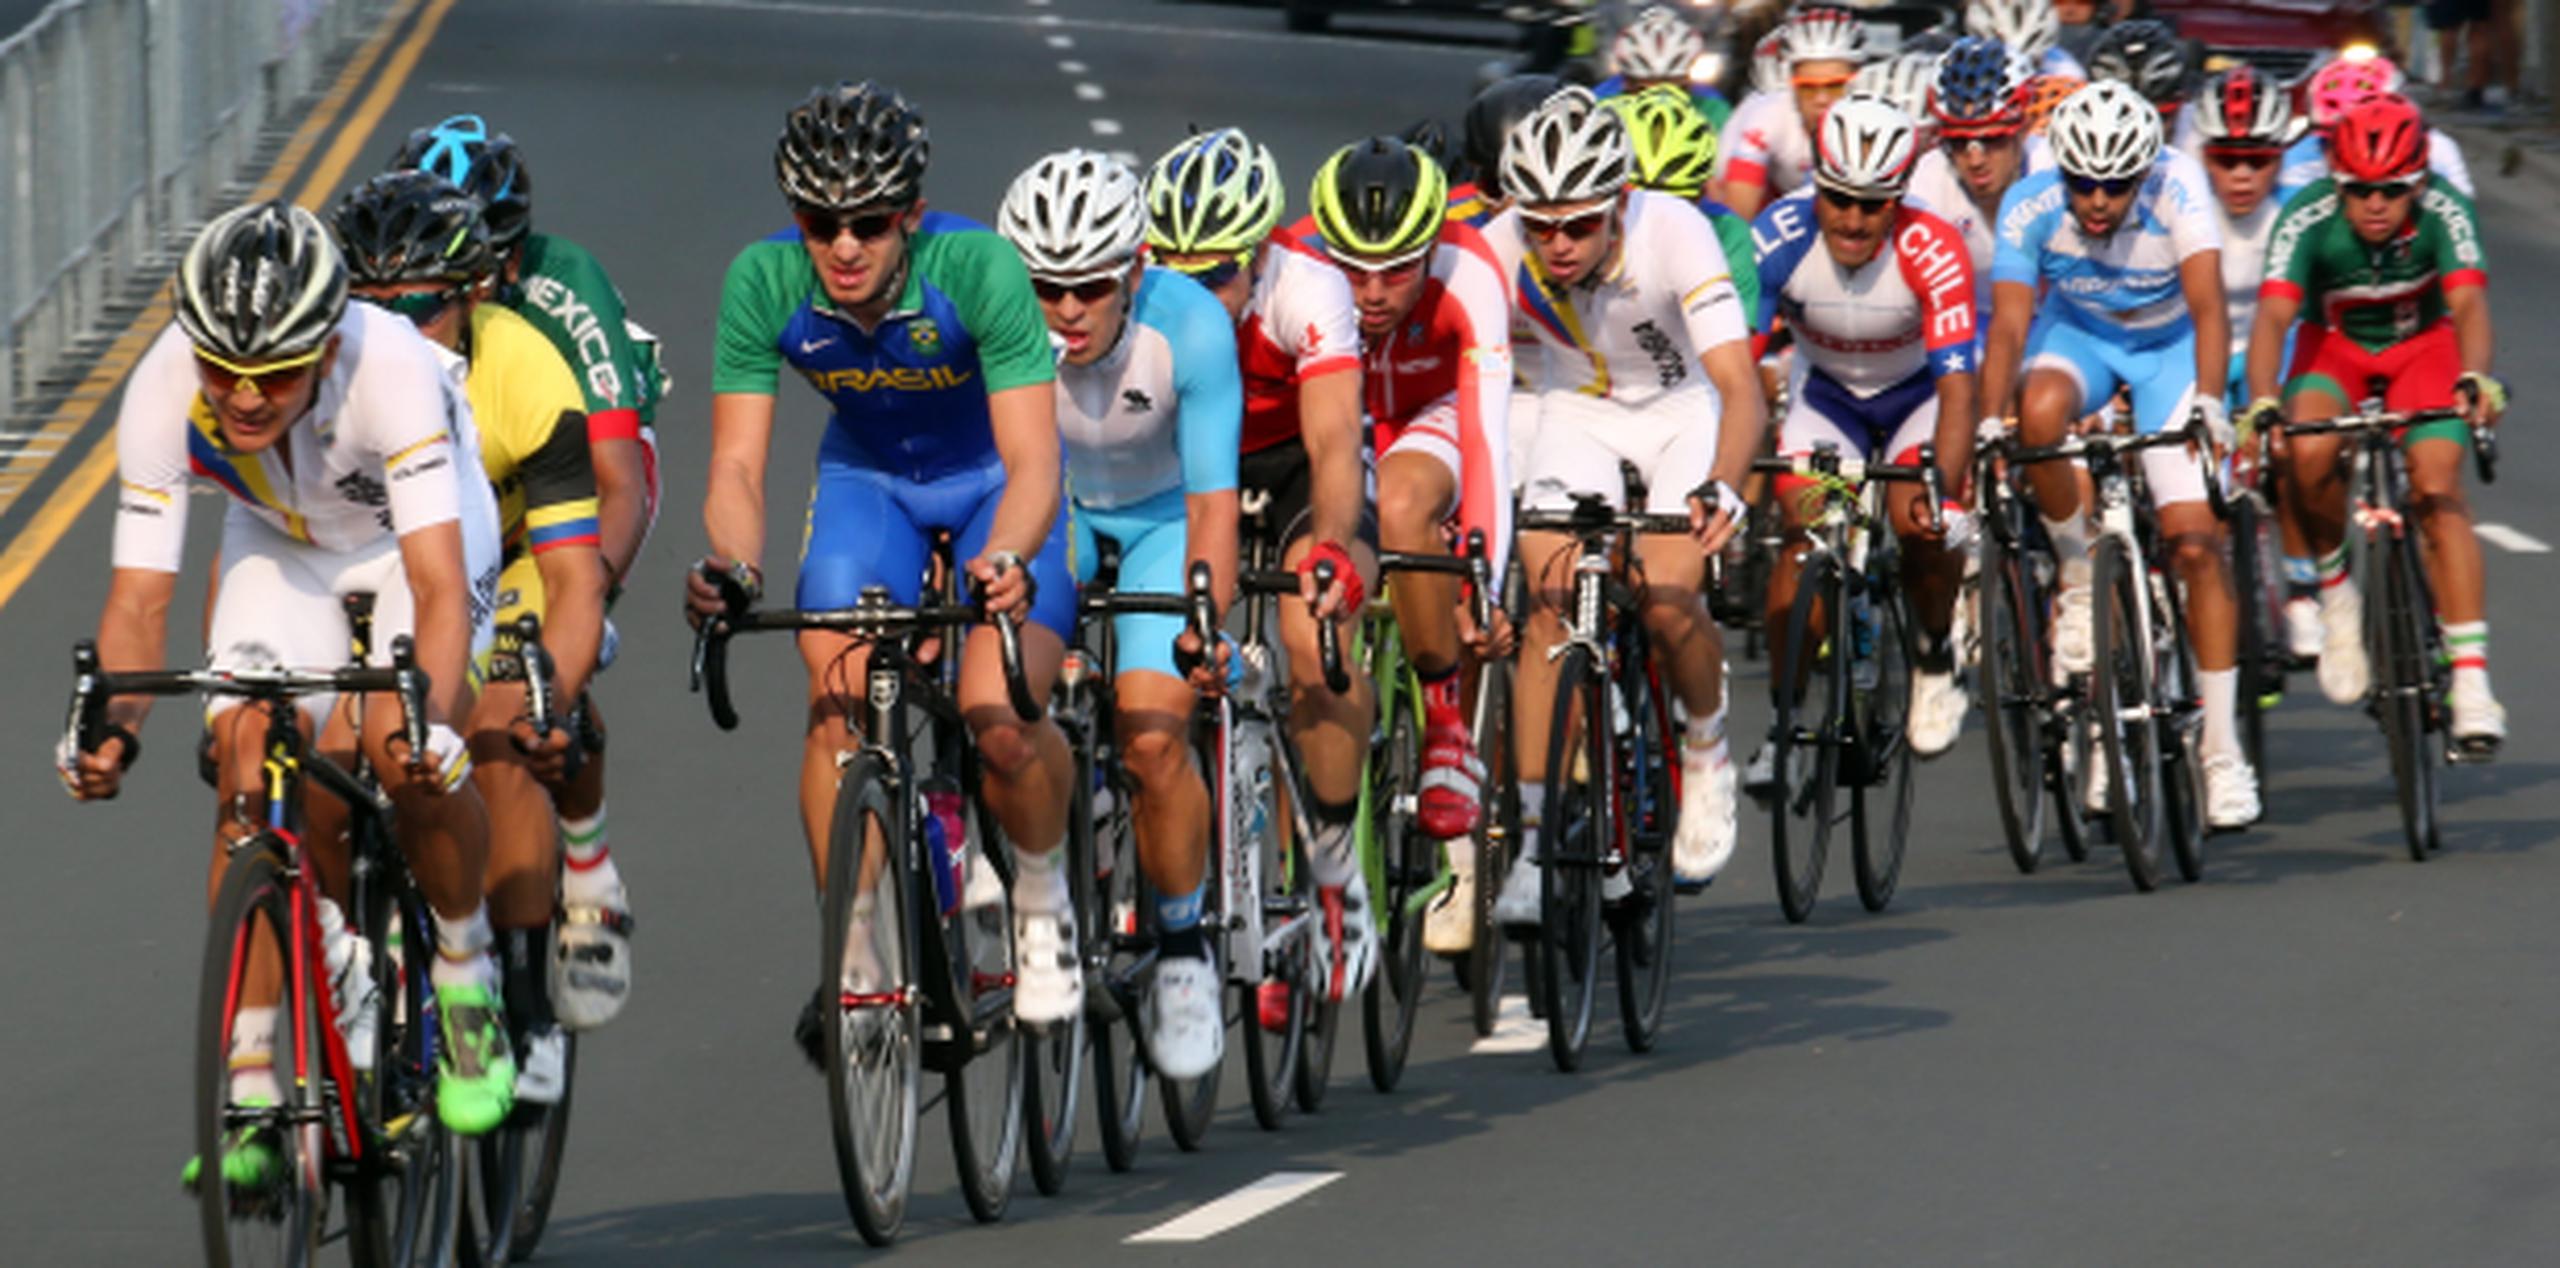 La prueba de ciclismo tuvo la participación de 42 competidores, 12 de los cuales no la completaron. (EFE / Alejandro Ernesto)